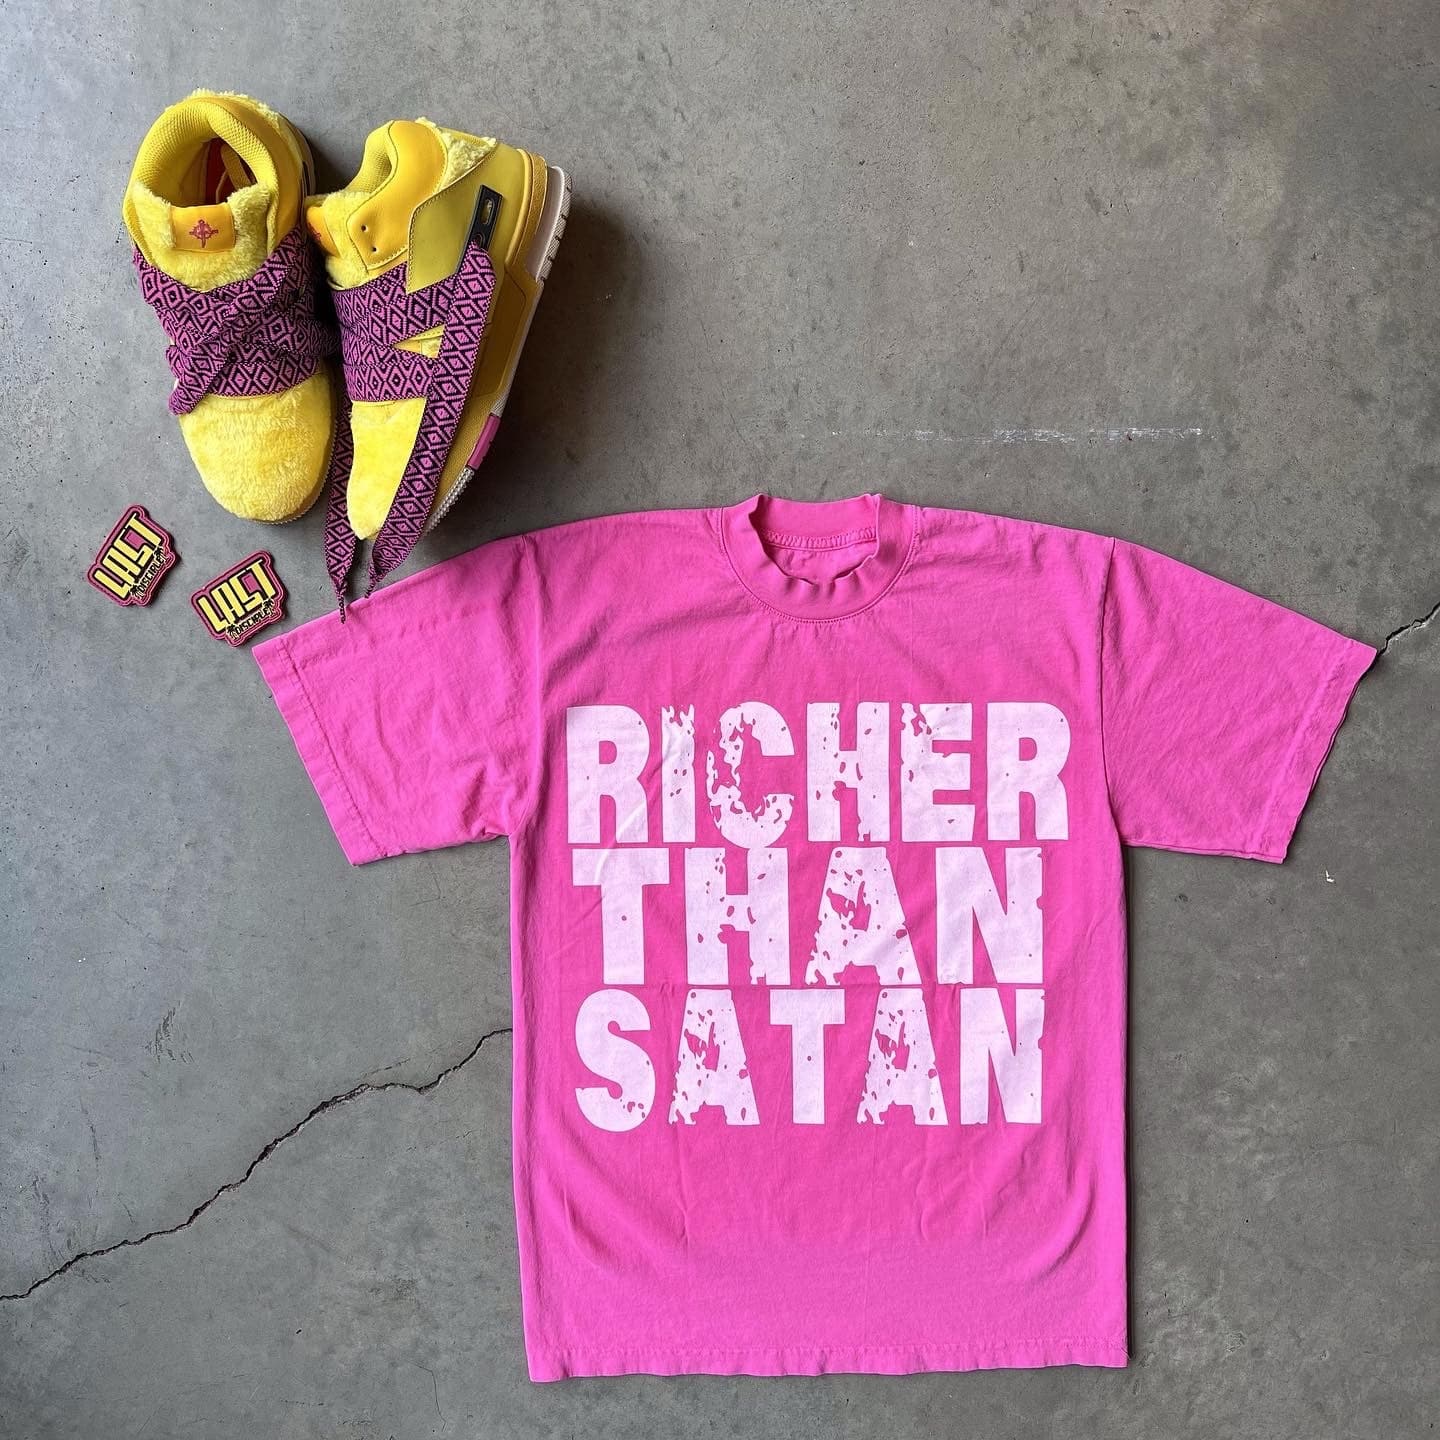 ‘Richer than satan’